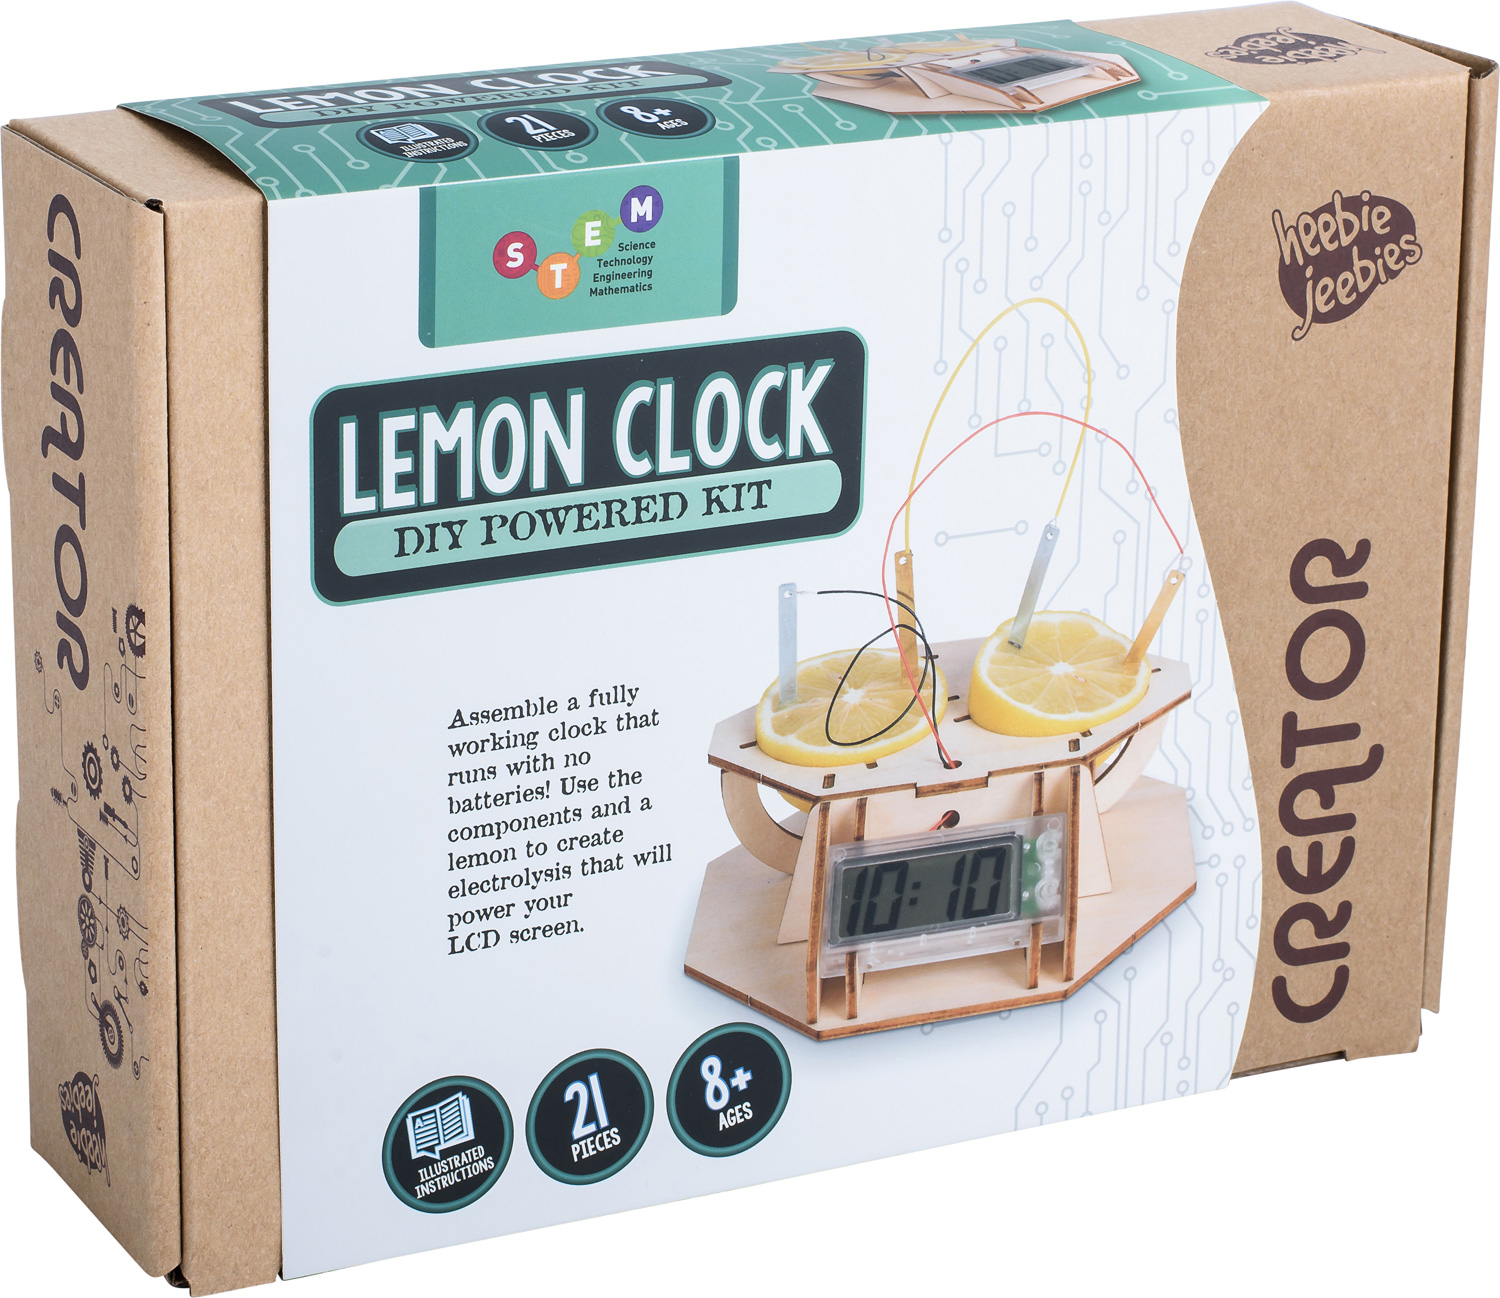 Lemon Clock - Creator